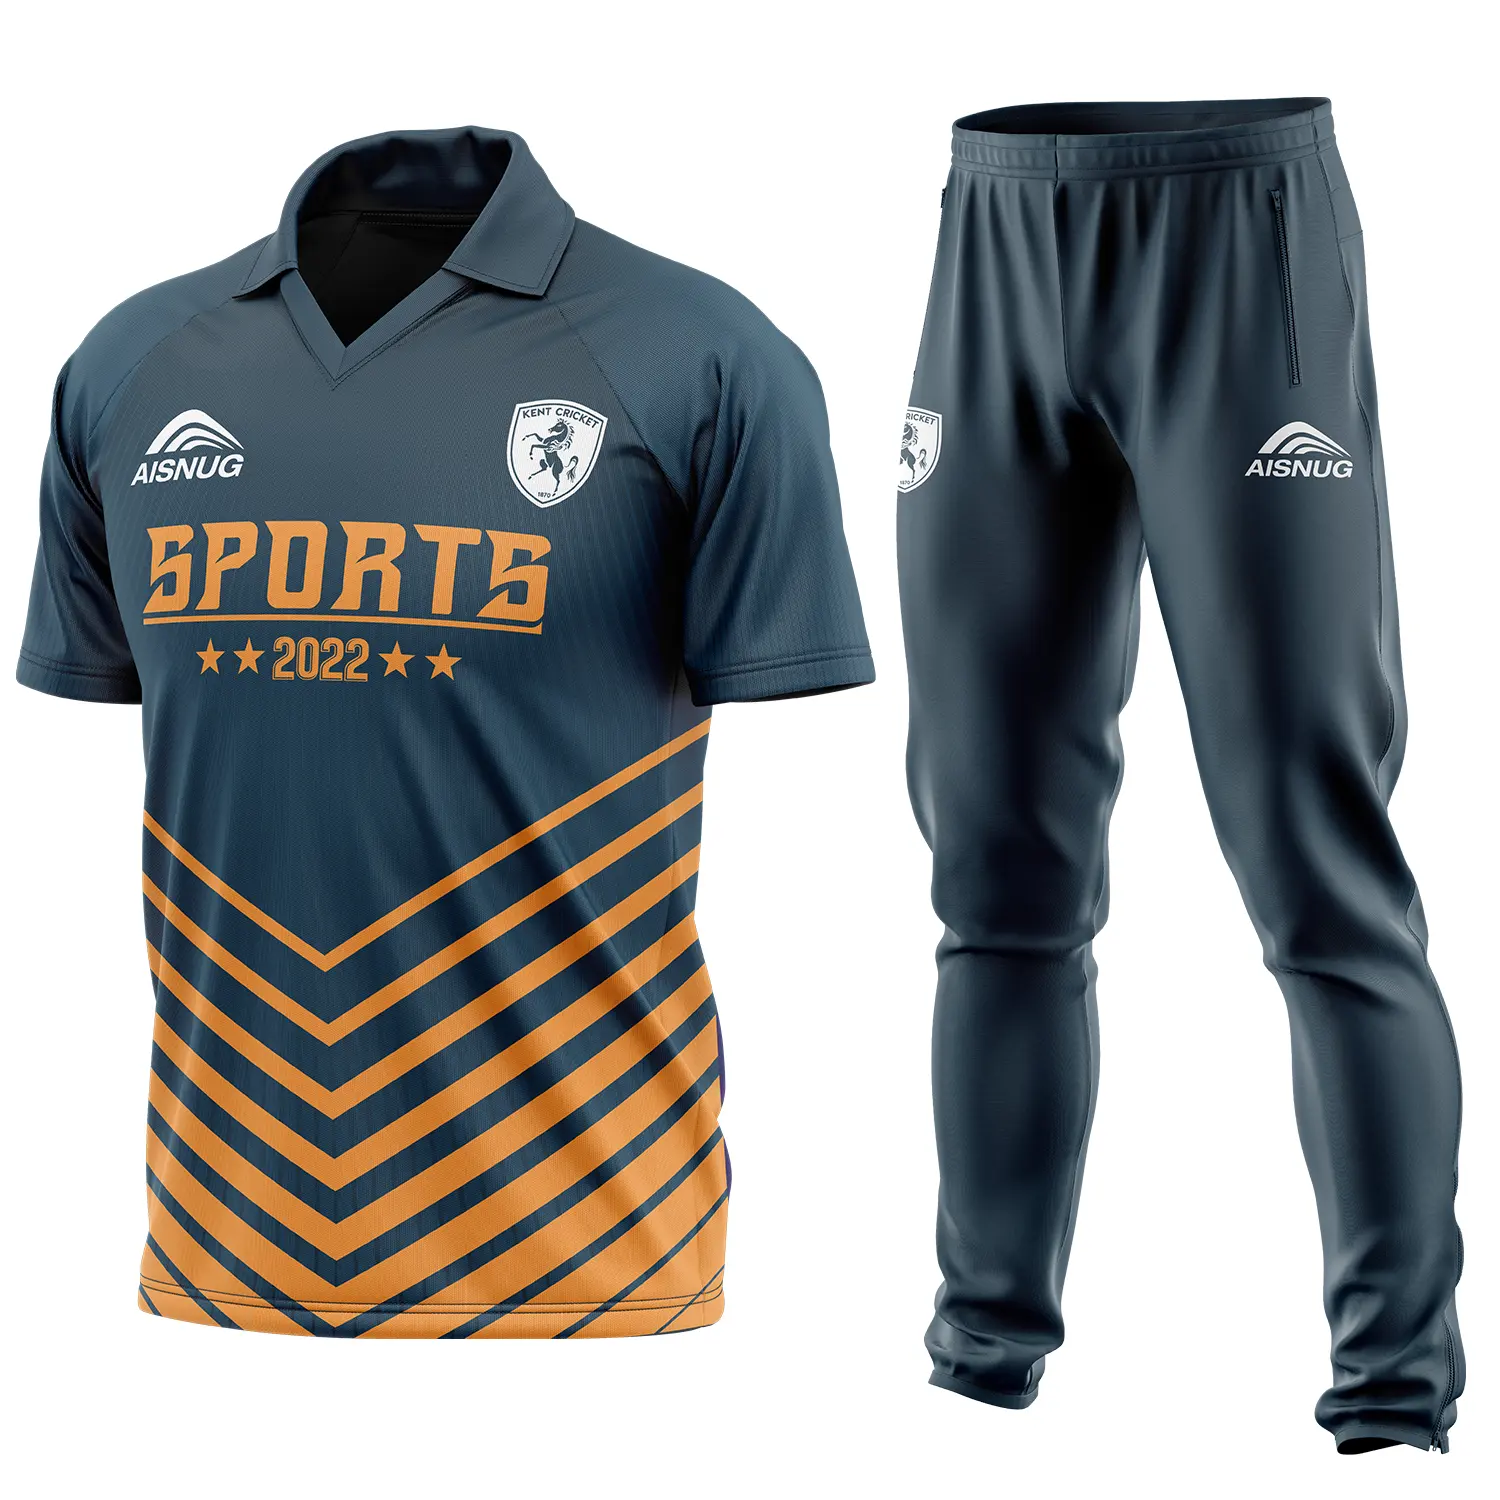 Reino Unido diseños personalizados uniformes impresión sublimada cricket camisas color y pantalón